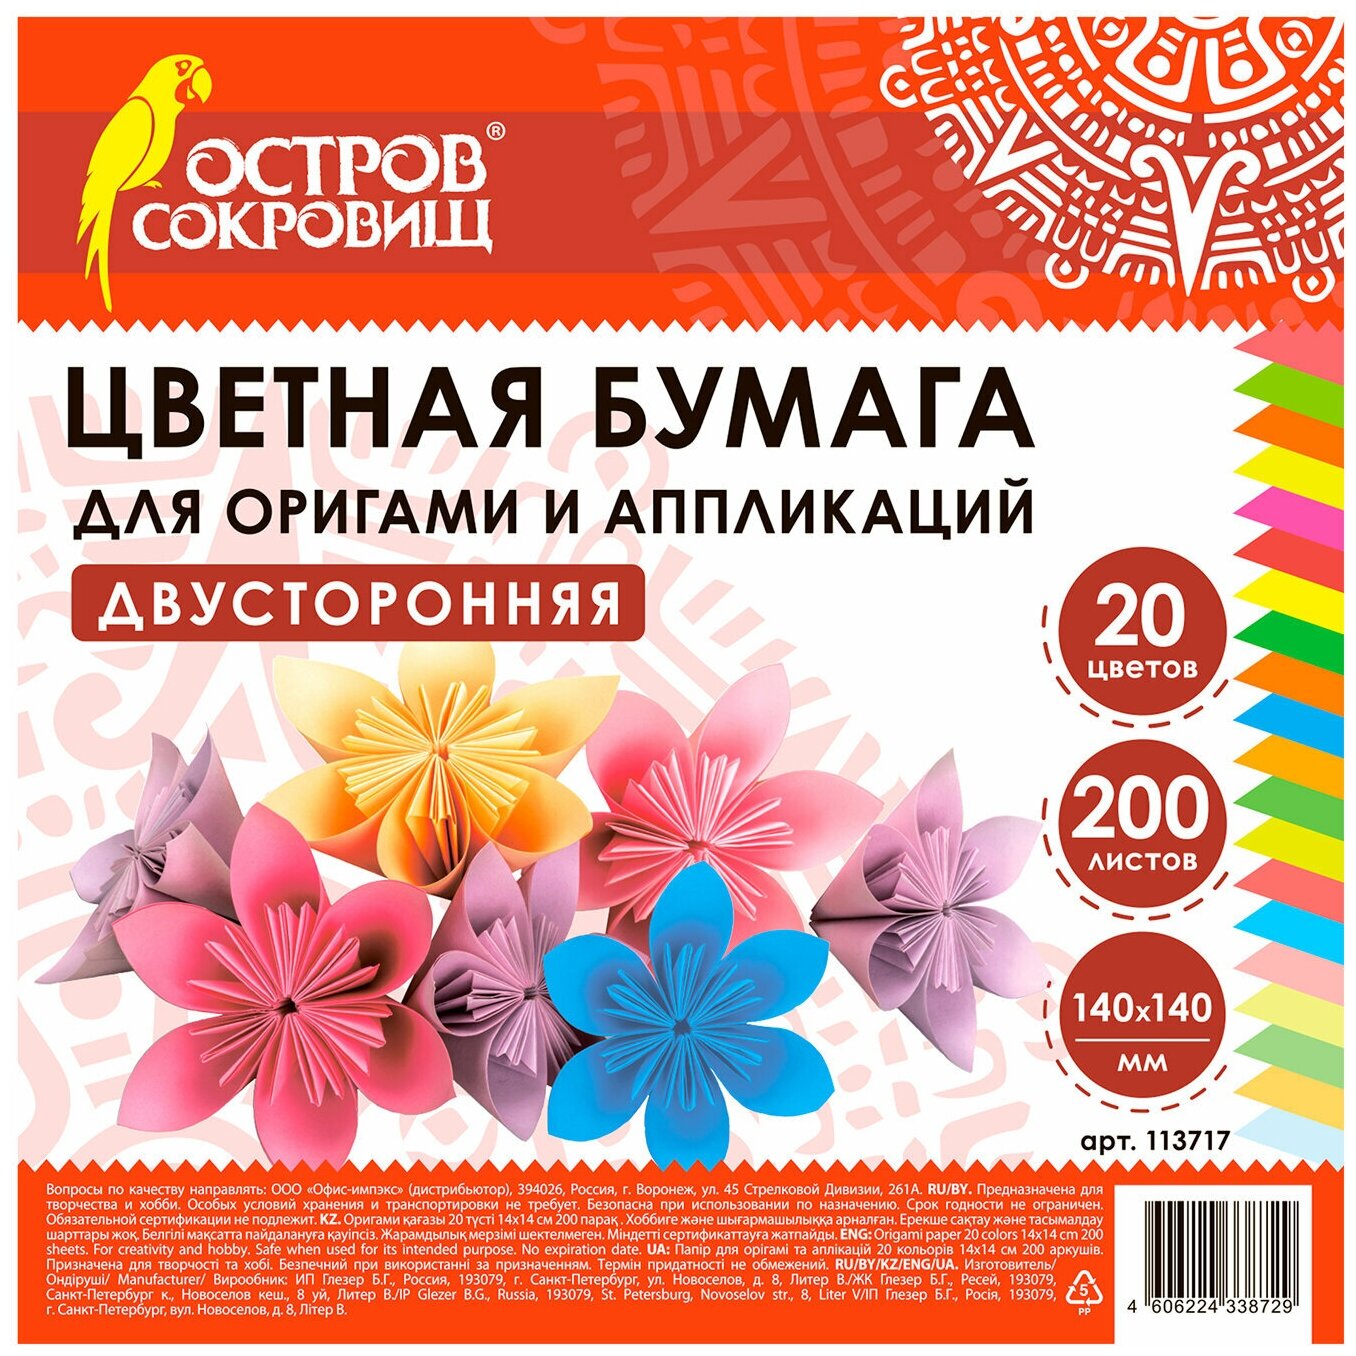 Бумага для оригами и аппликаций Остров сокровищ 14х14 см, 200 листов, 20 цветов